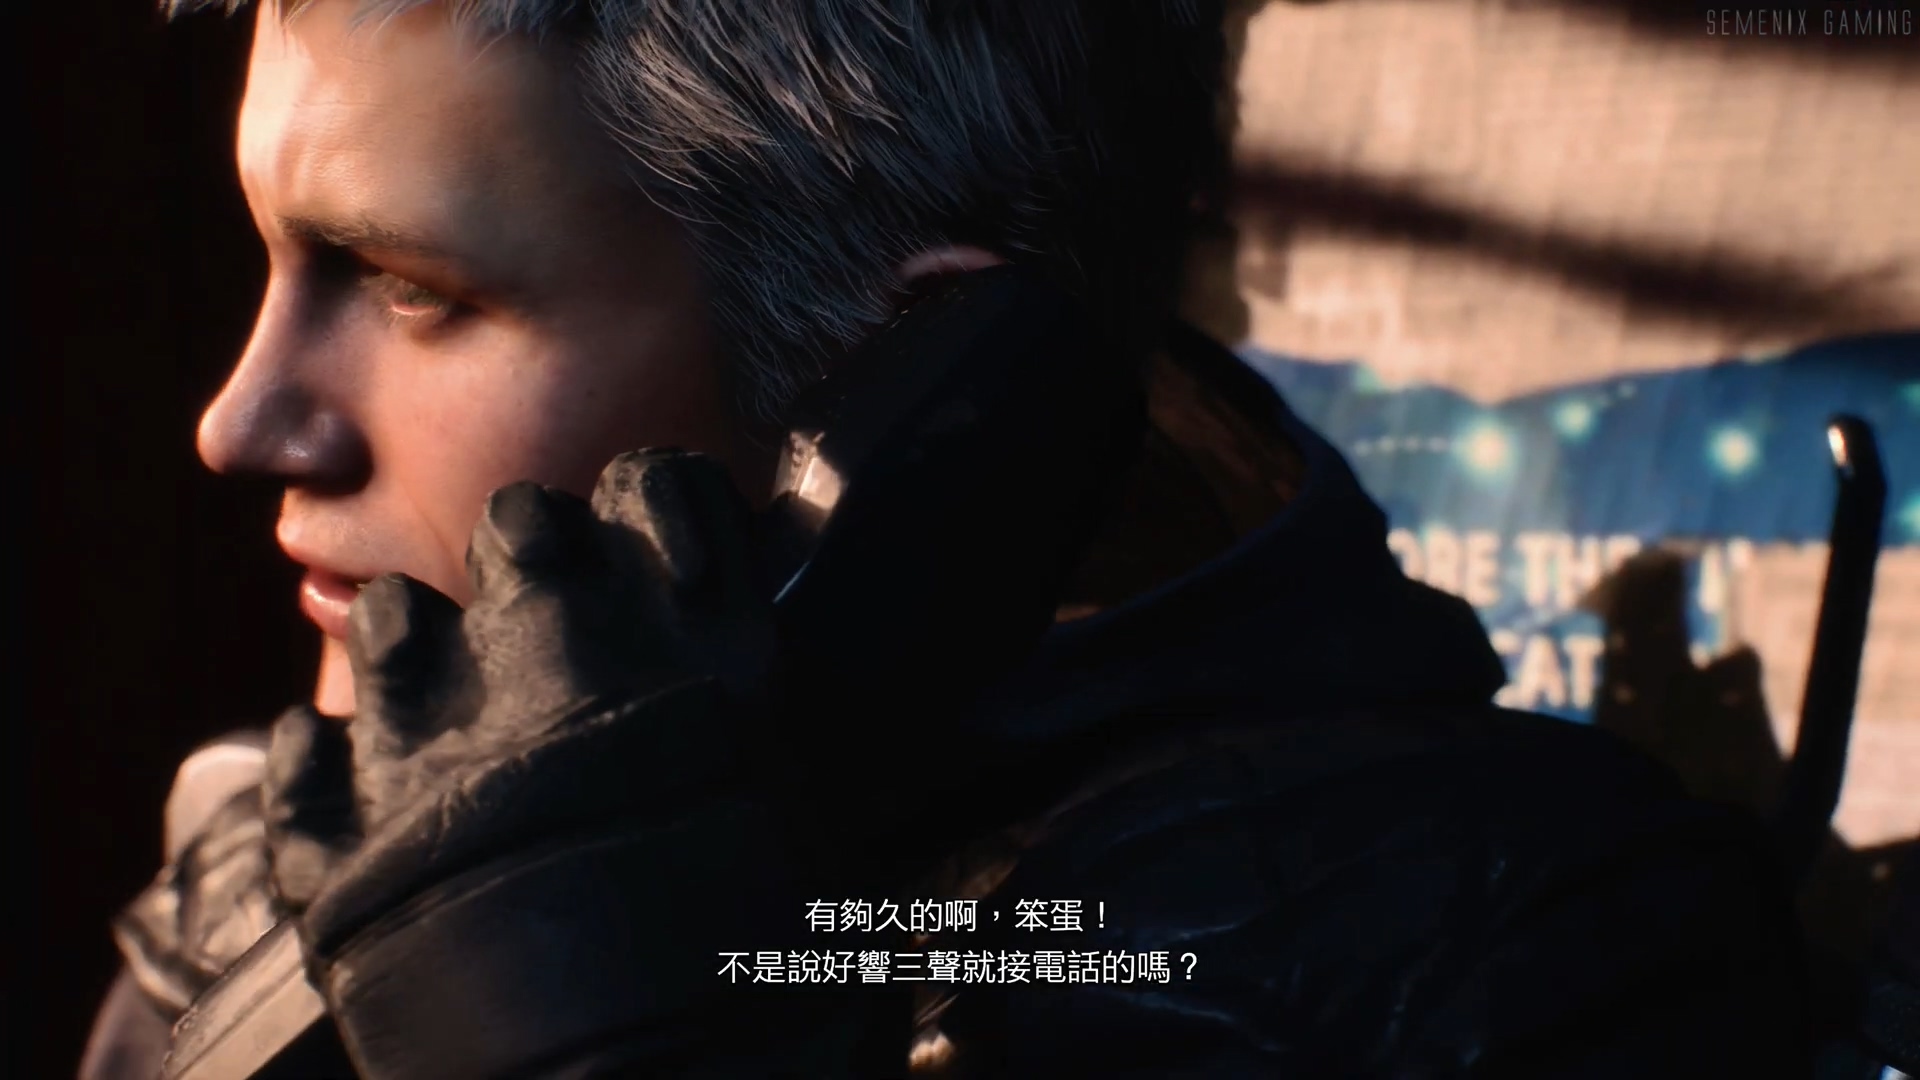 《鬼泣5》体验版完整流程视频 中文字幕